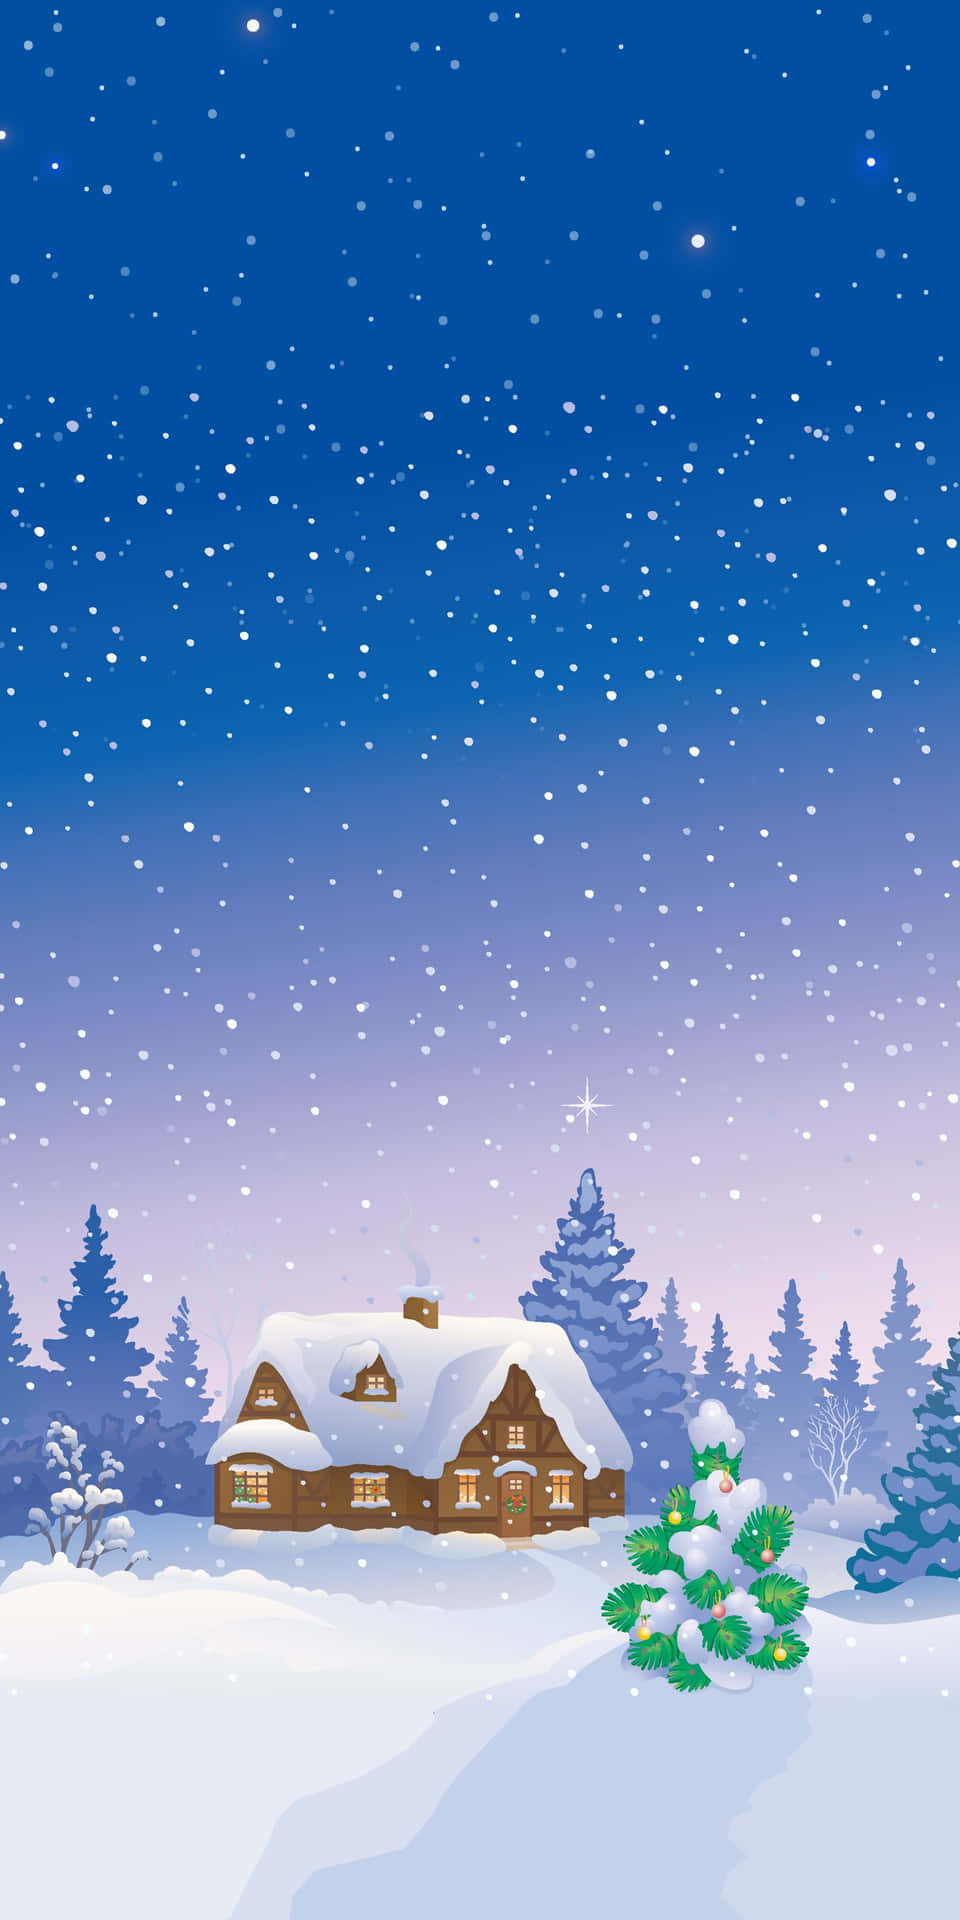 Unosfondo Incantevole Per Iphone Che Cattura La Bellezza Del Natale Mescolata A Una Magica Nevicata. Sfondo